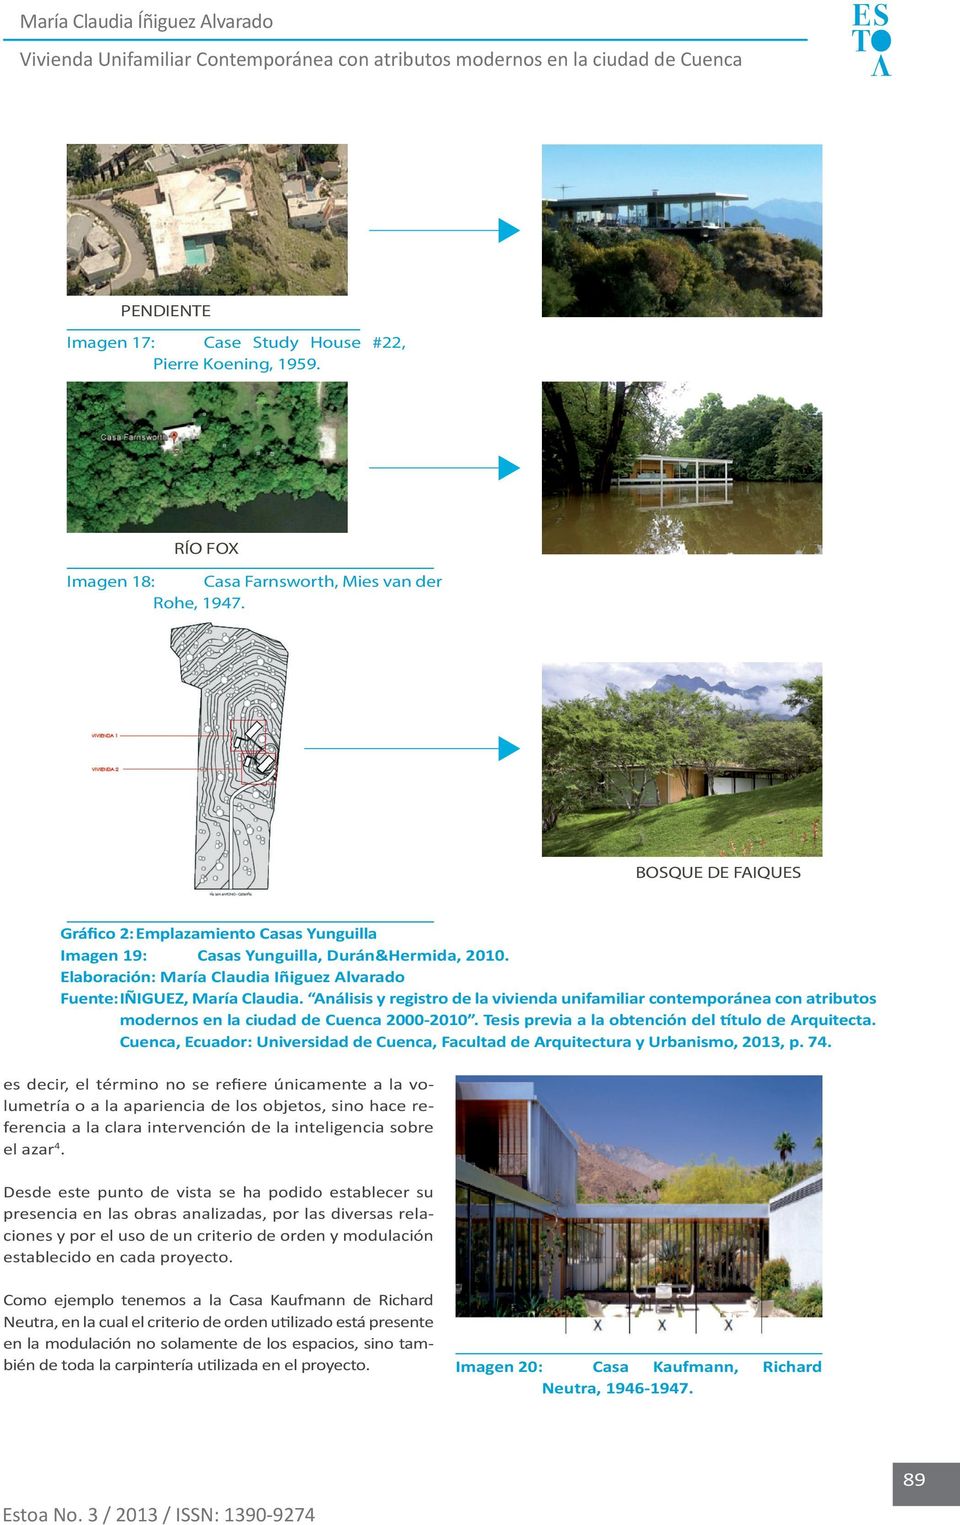 Análisis y registro de la vivienda unifamiliar contemporánea con atributos modernos en la ciudad de Cuenca 2000-2010. Tesis previa a la obtención del título de Arquitecta.